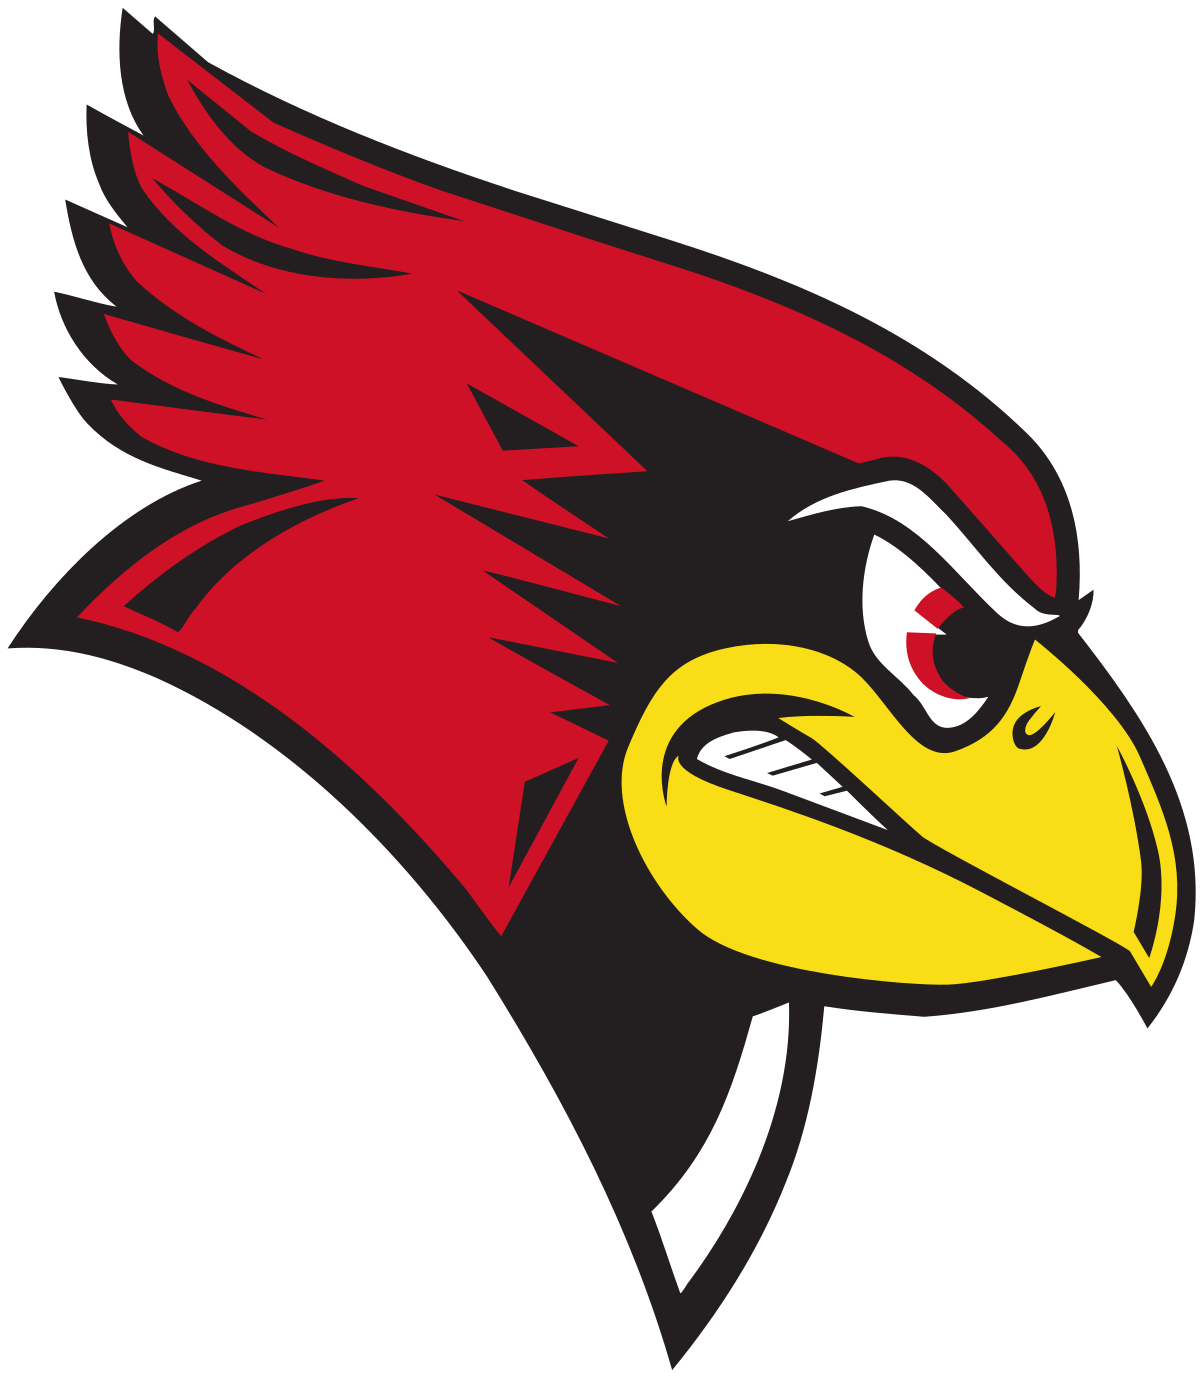 Illinois State Redbirds Logo - Illinois State Redbirds